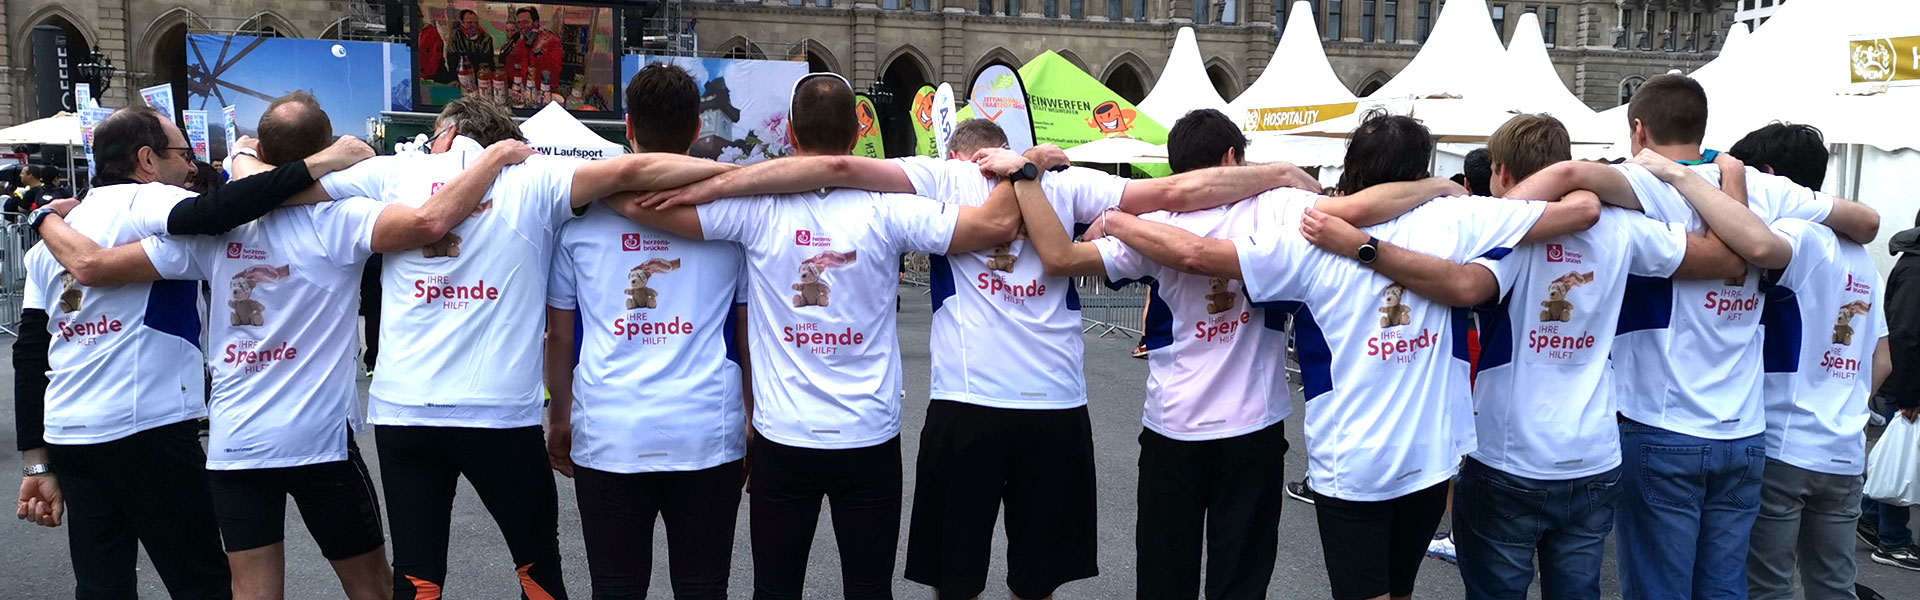 Vienna City Marathon: Laufen für den guten Zweck